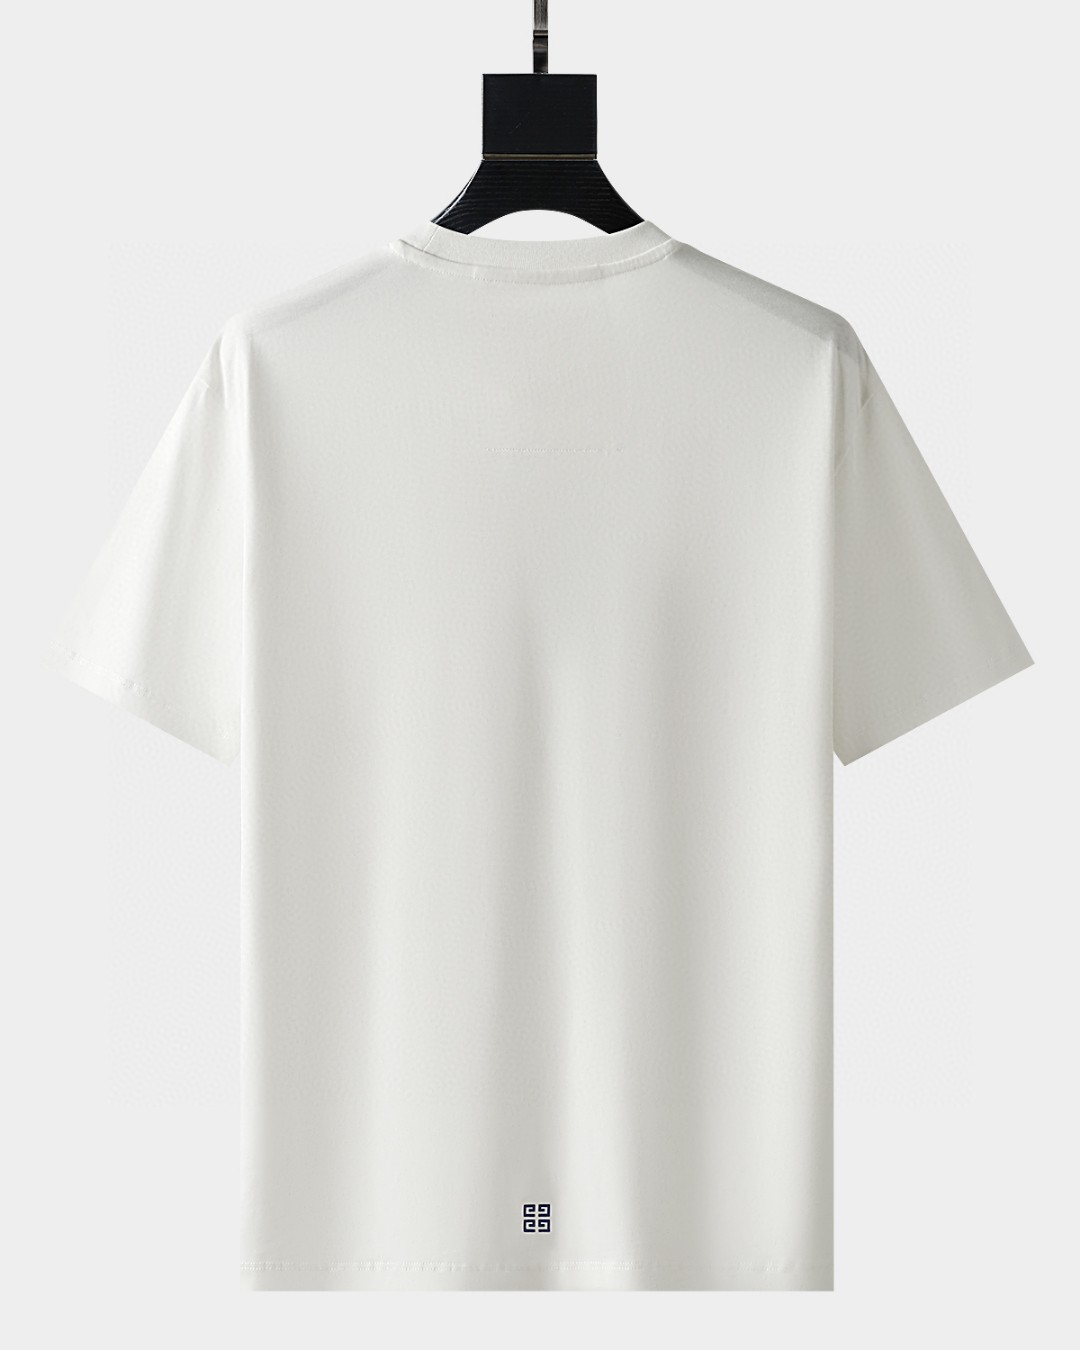 NEW 圧倒的な新作 ジバンシー半袖 tシャツn級品スタイリッシュな印象 着心地の良さ 洗練されたデザイン_2